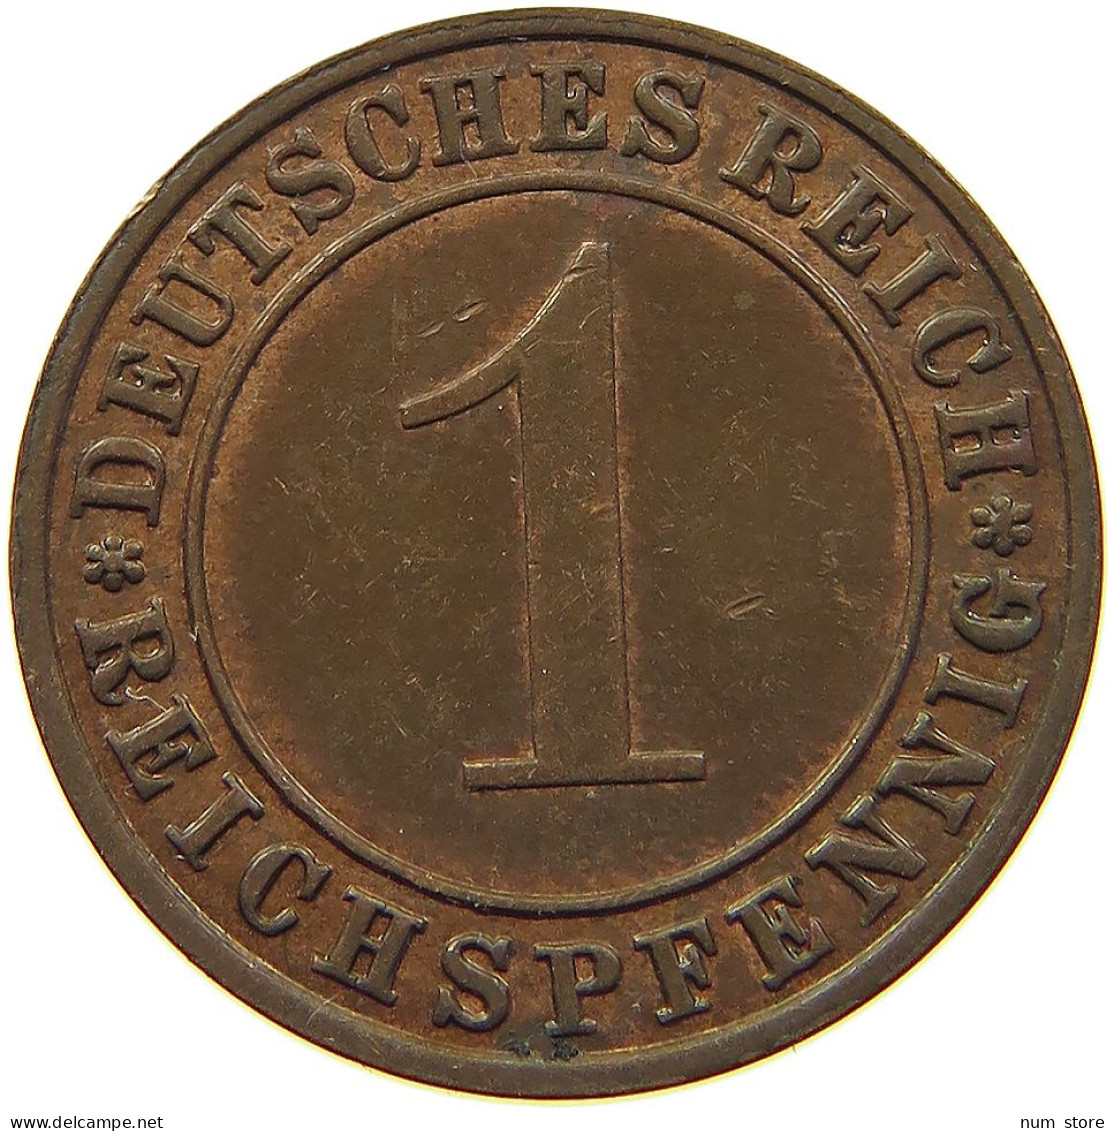 WEIMARER REPUBLIK REICHSPFENNIG 1936 A  #MA 100178 - 1 Renten- & 1 Reichspfennig